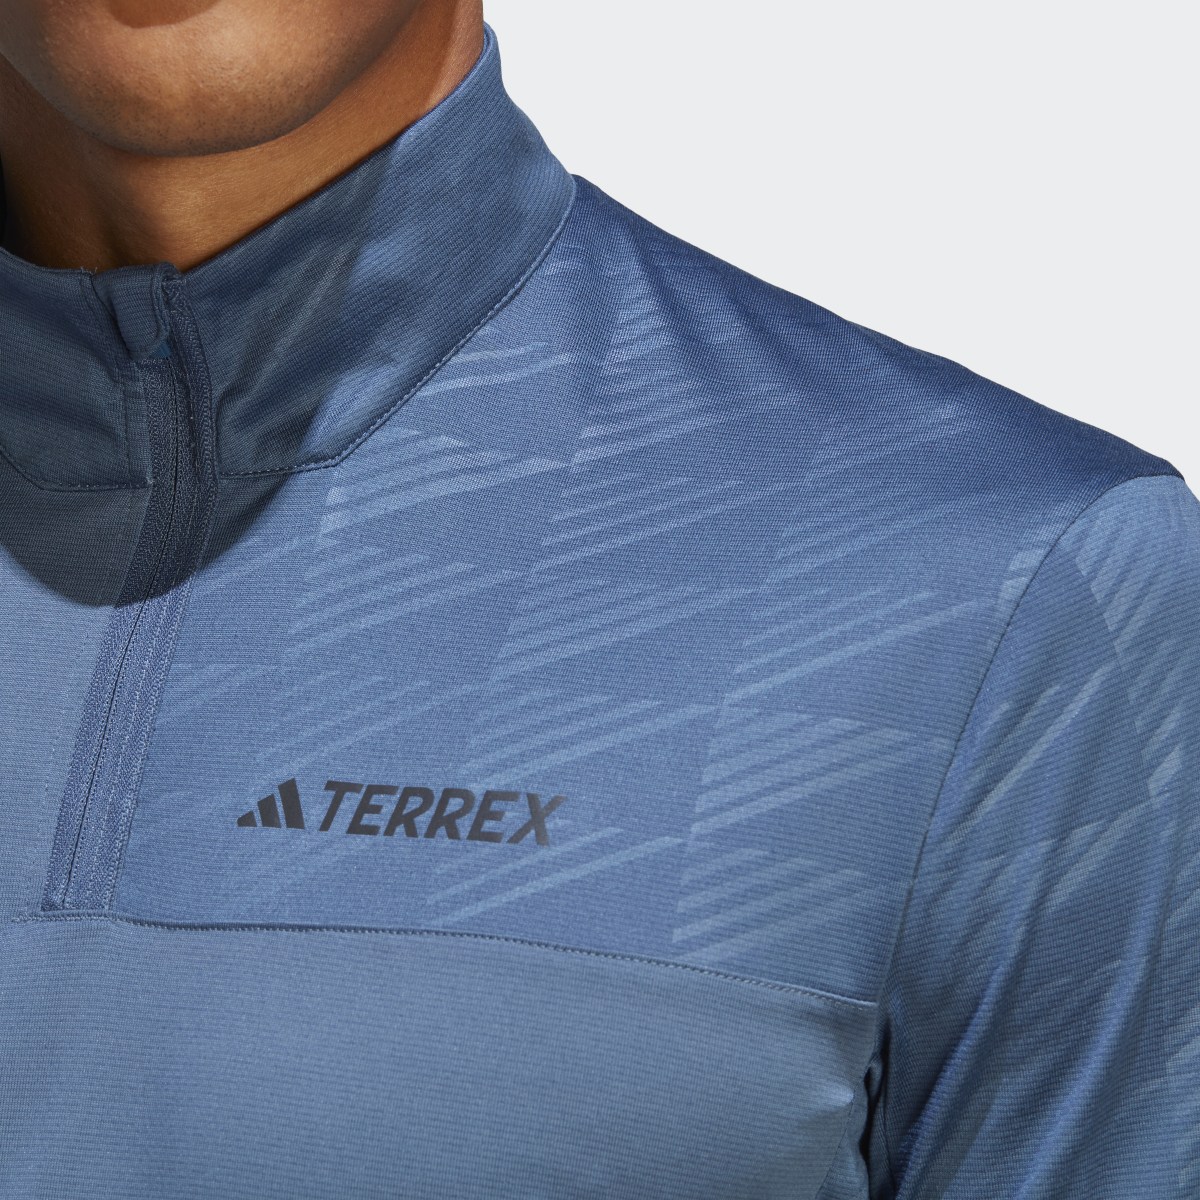 Adidas Terrex Multi Half-Zip Long Sleeve Tee. 7